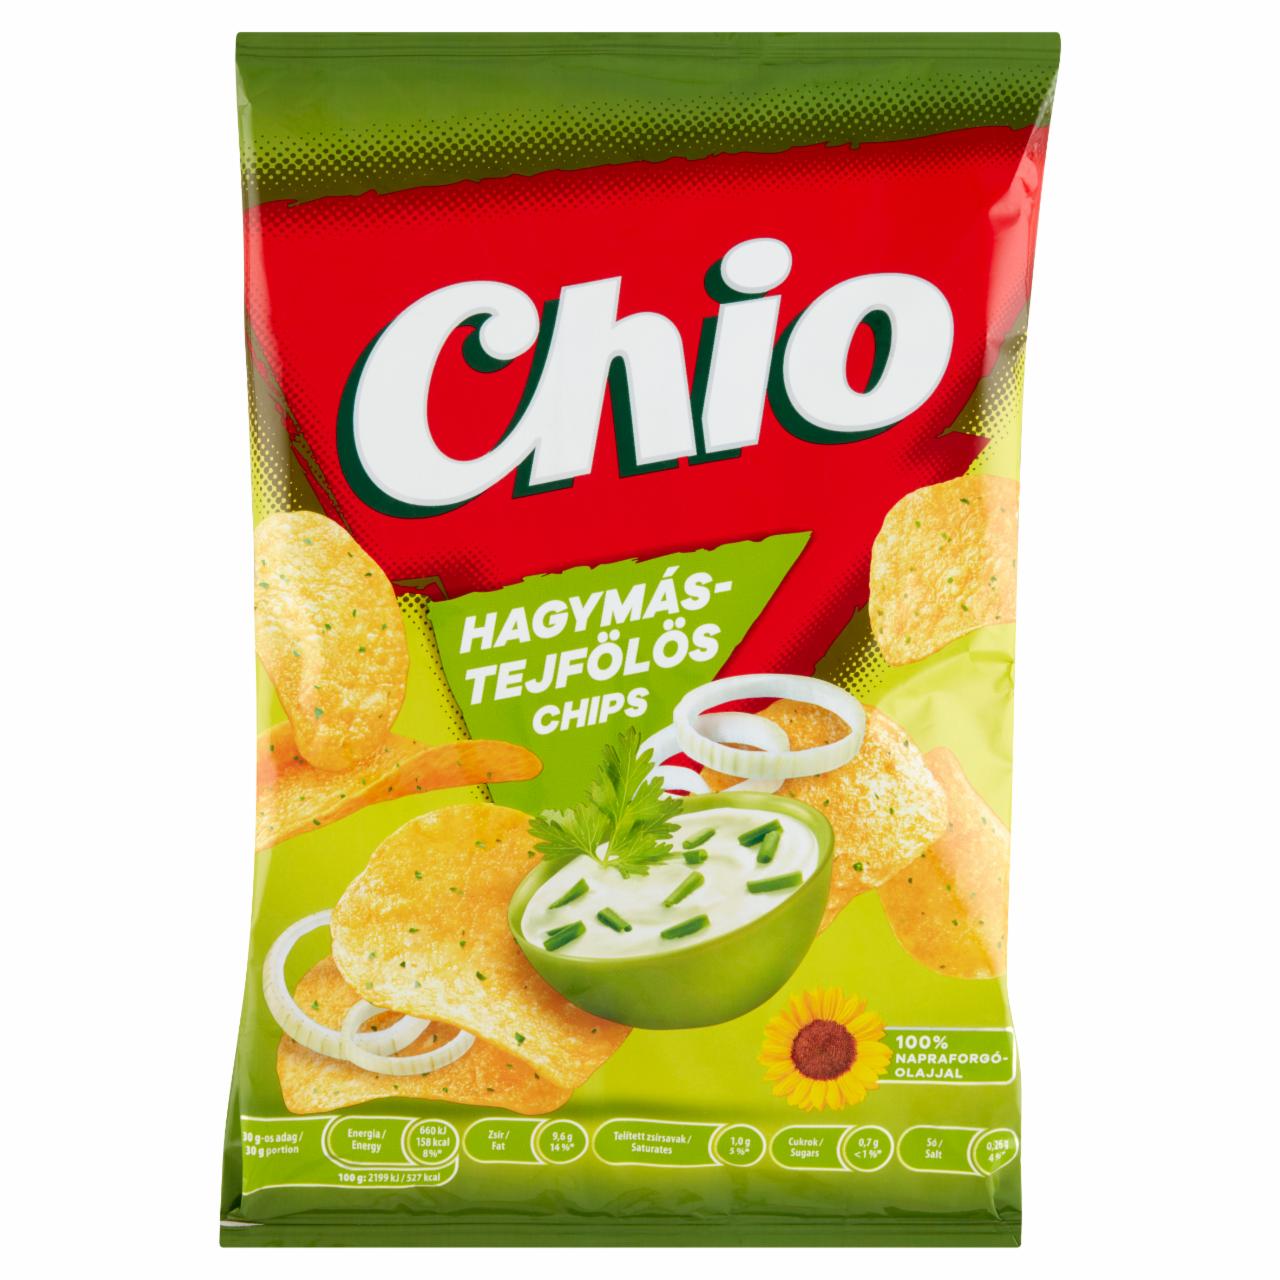 Képek - Chio hagymás-tejfölös burgonyachips 70 g